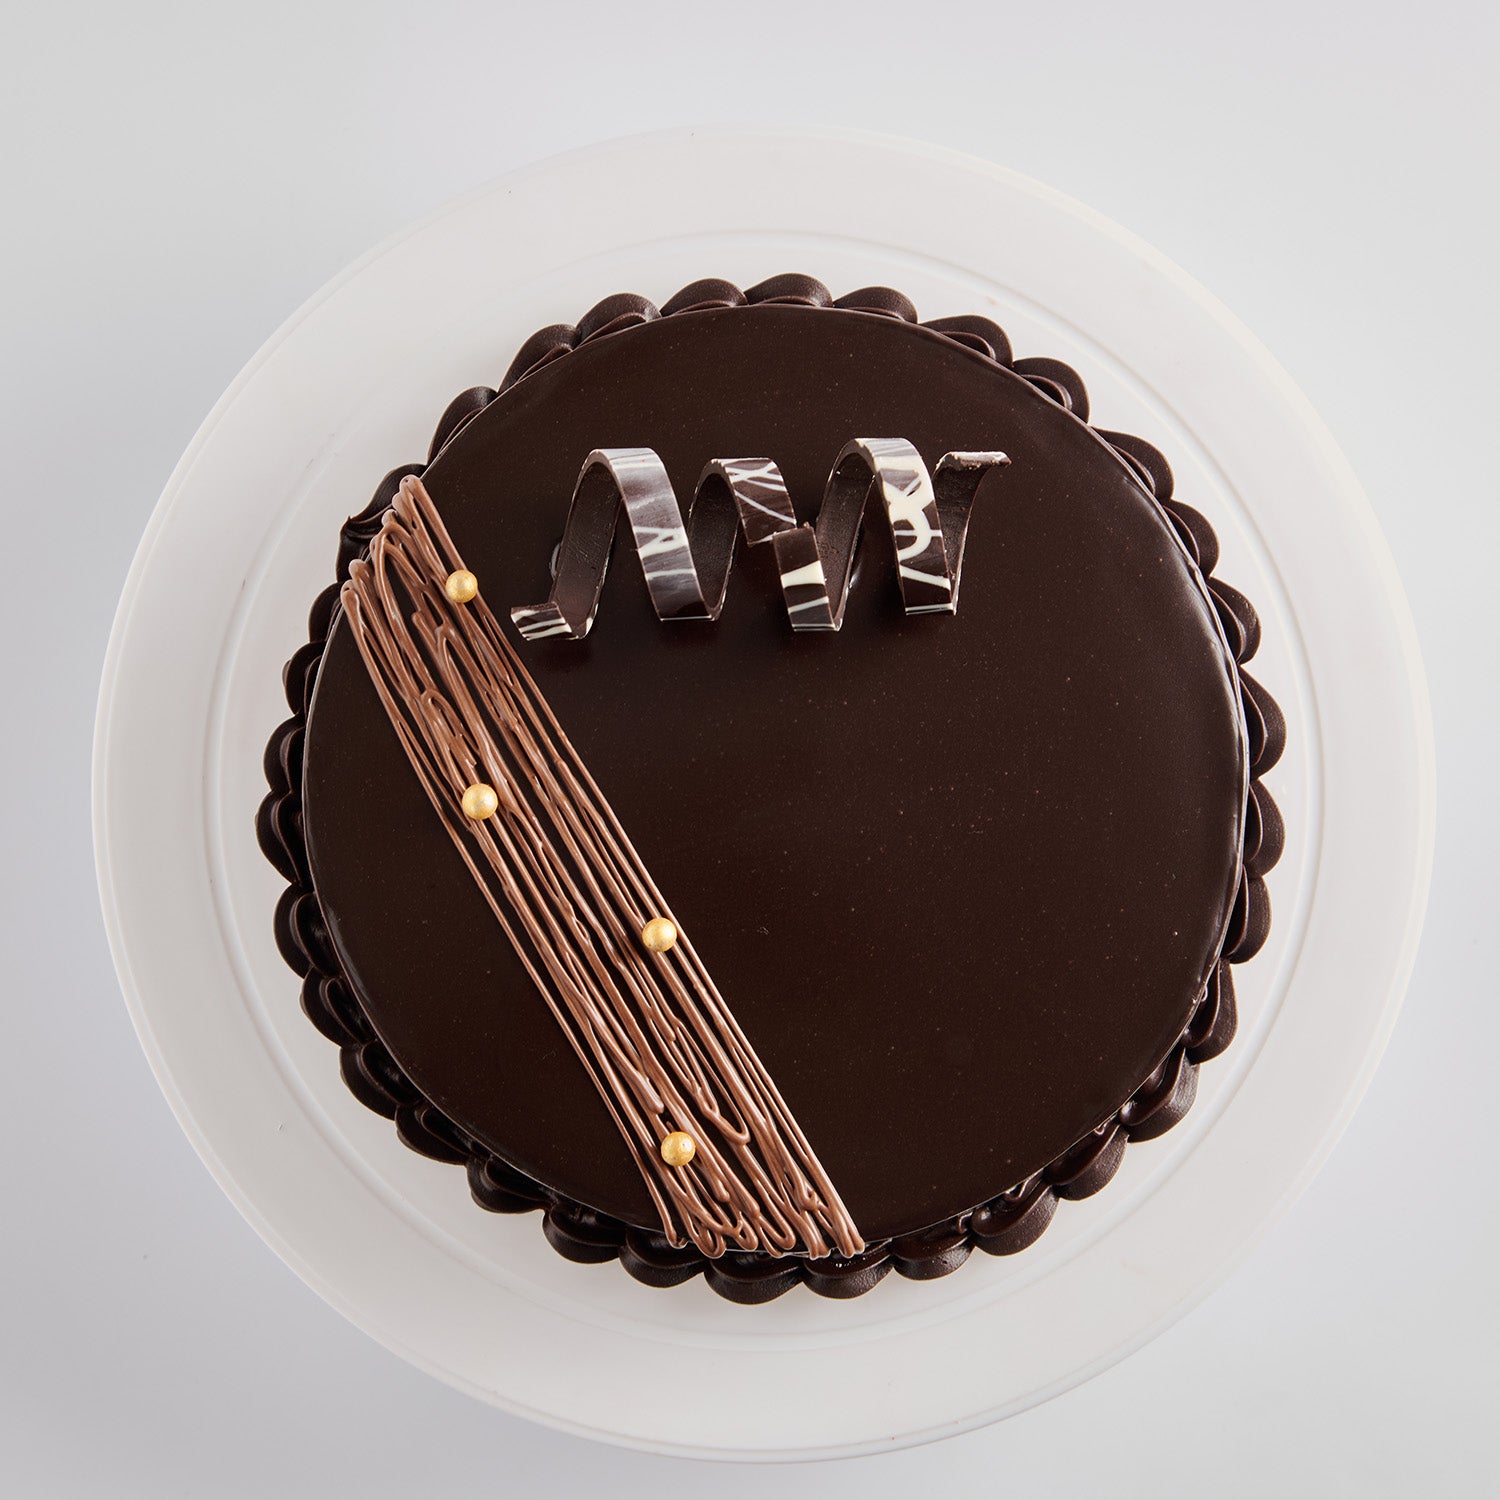 Chocolate & almond cake